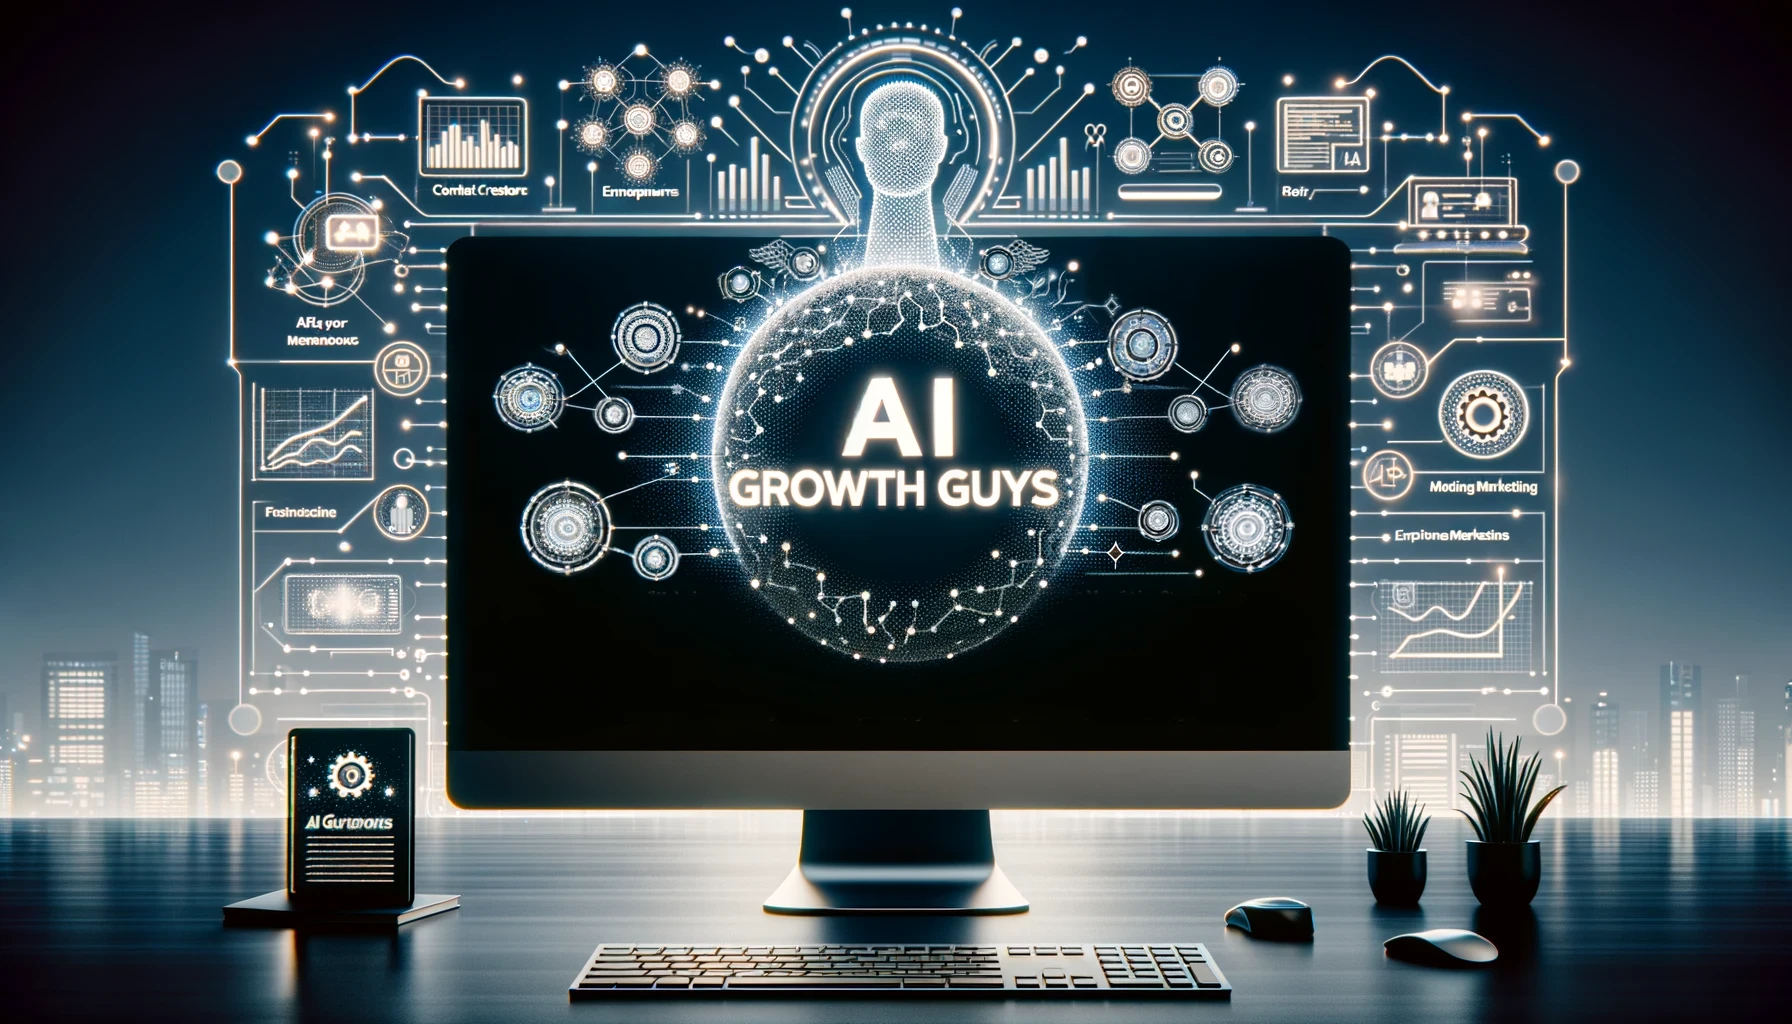 AI growth guys